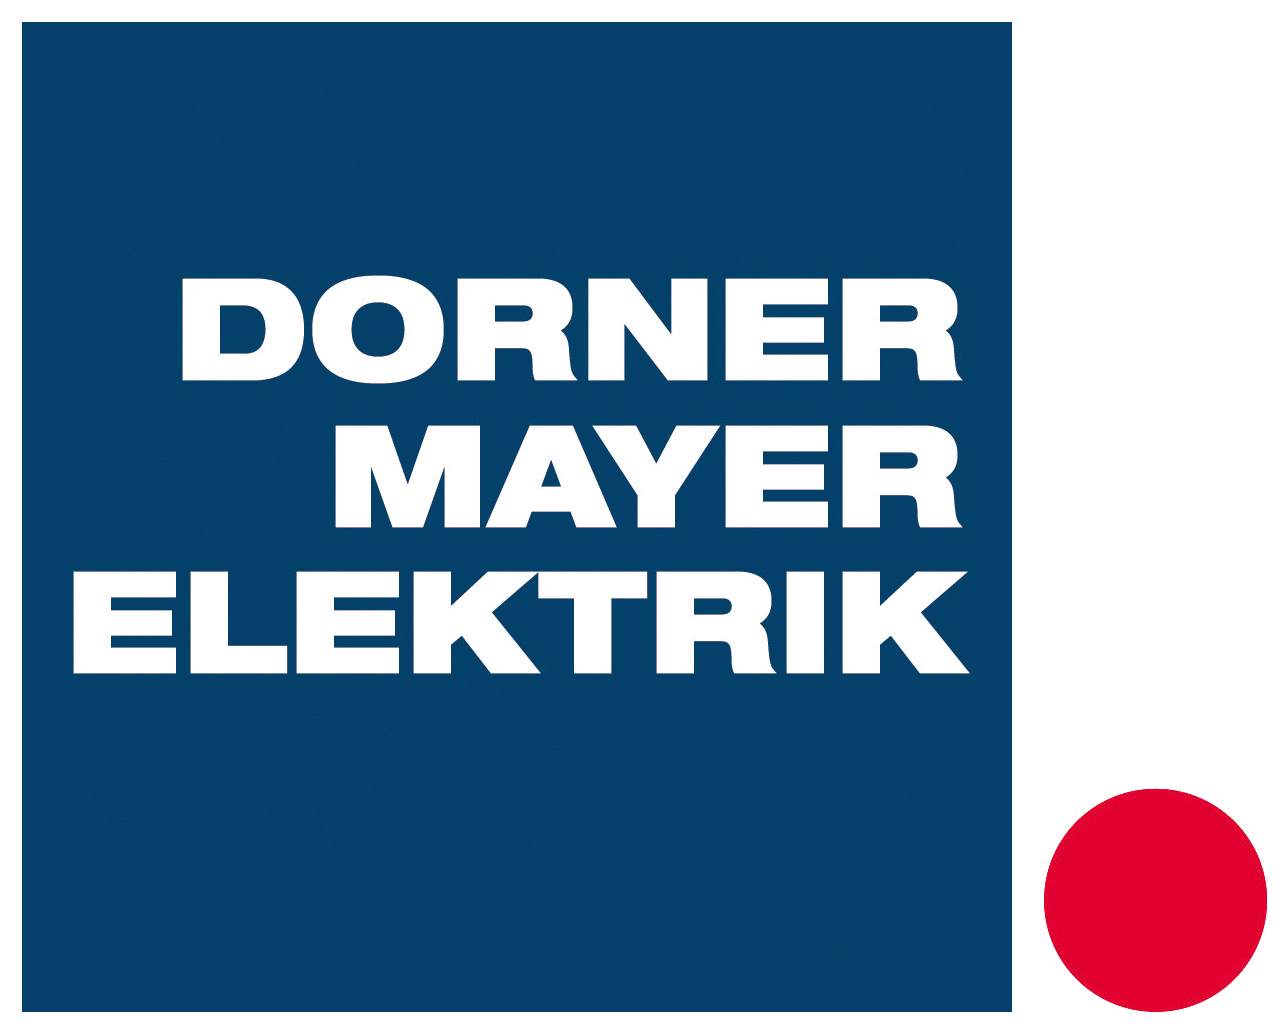 (c) Dorner-mayer.at